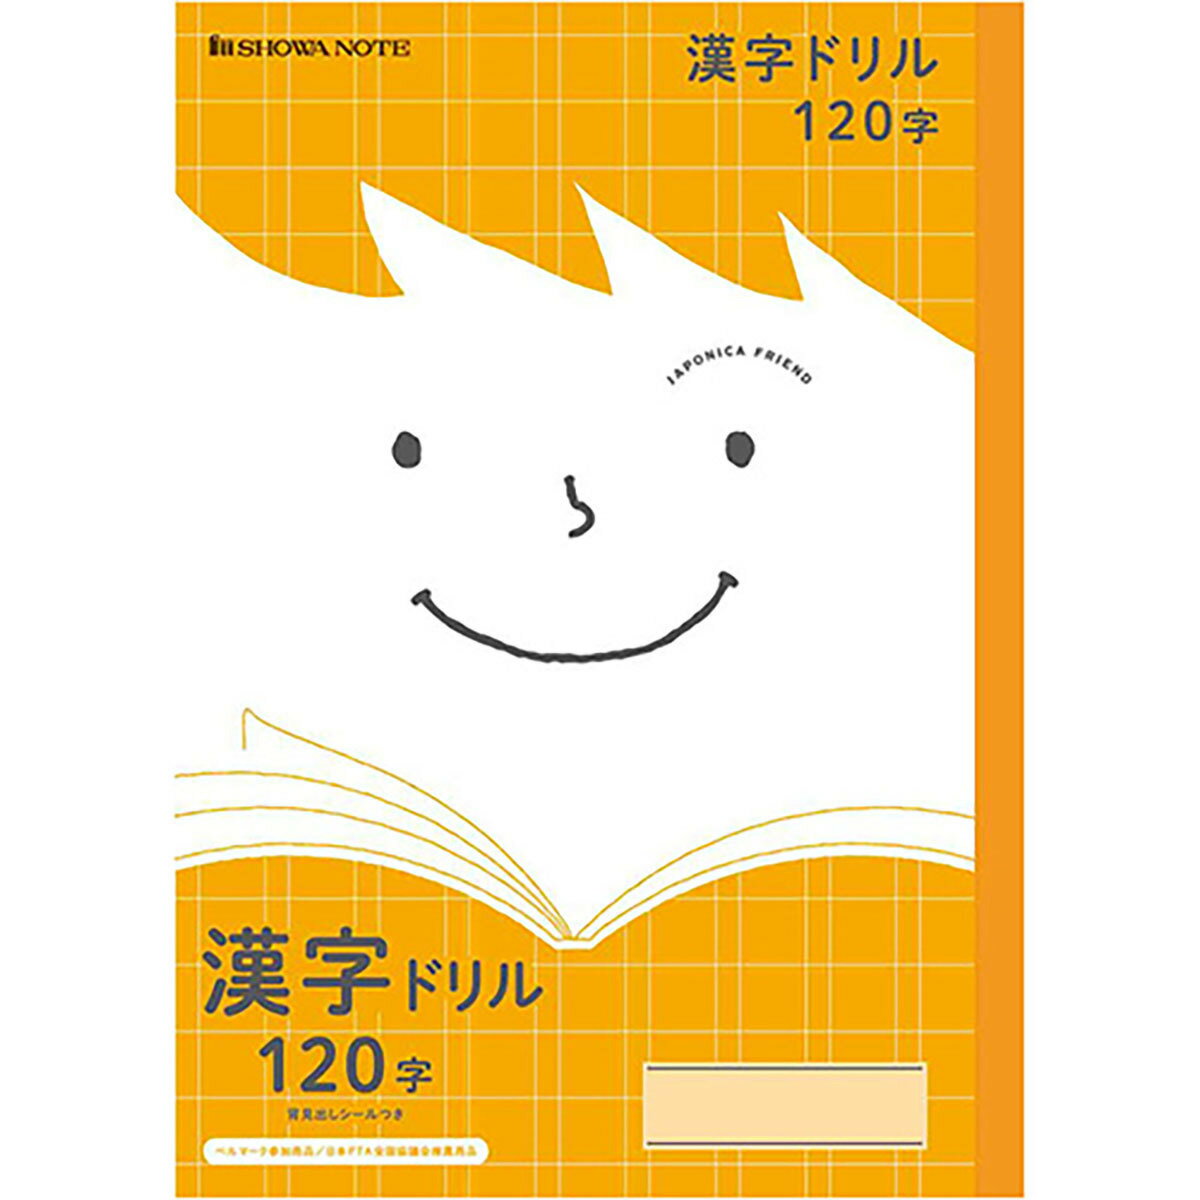 「 ショウワノート ジャポニカフレンド 漢字ドリル120字/橙 B5 JFL50-2 」 